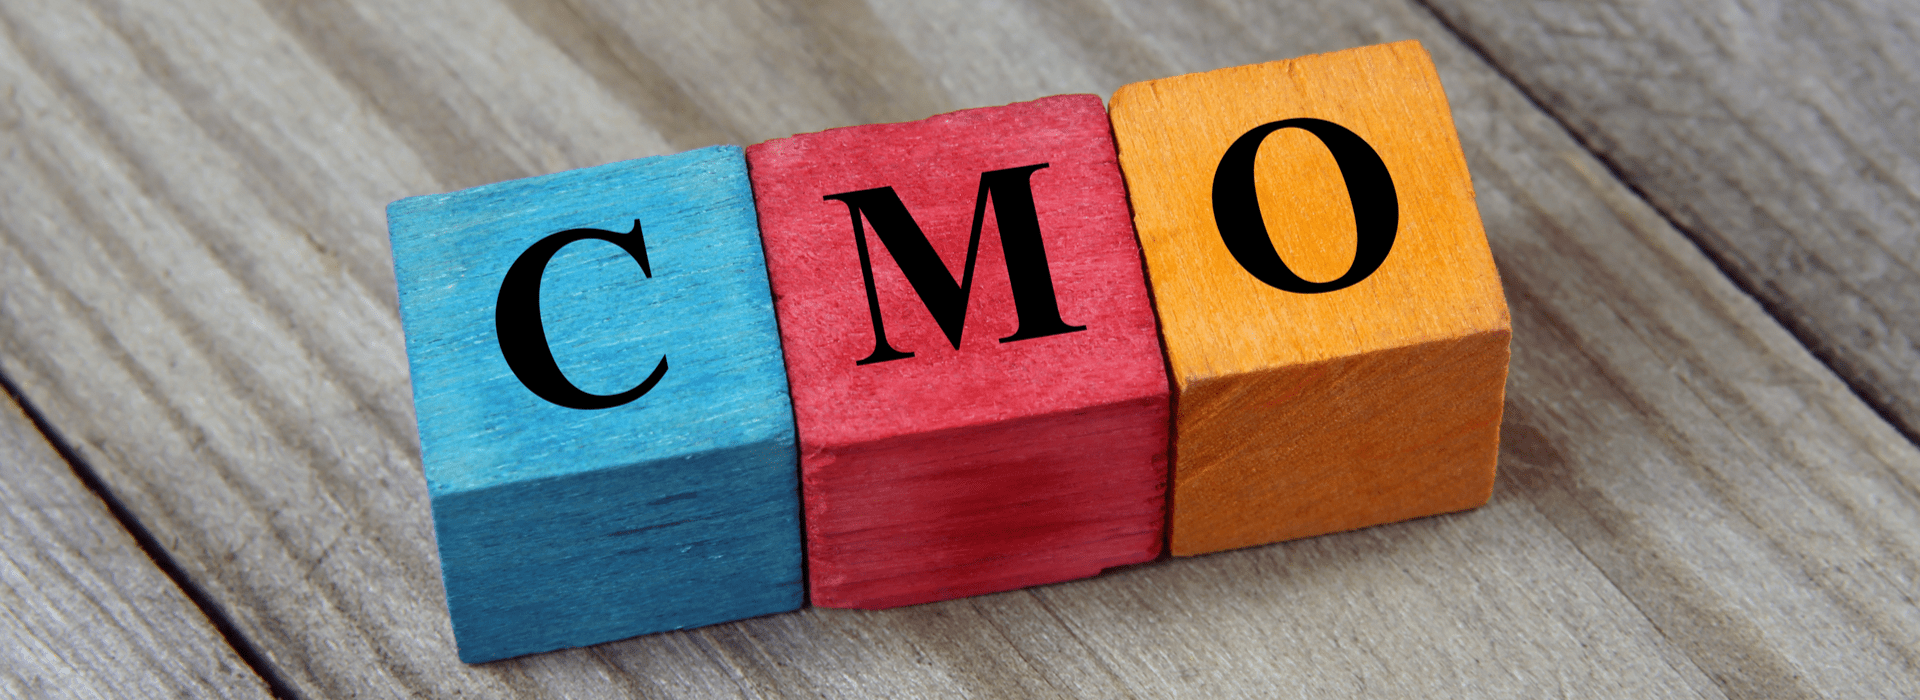 The transformative CMO